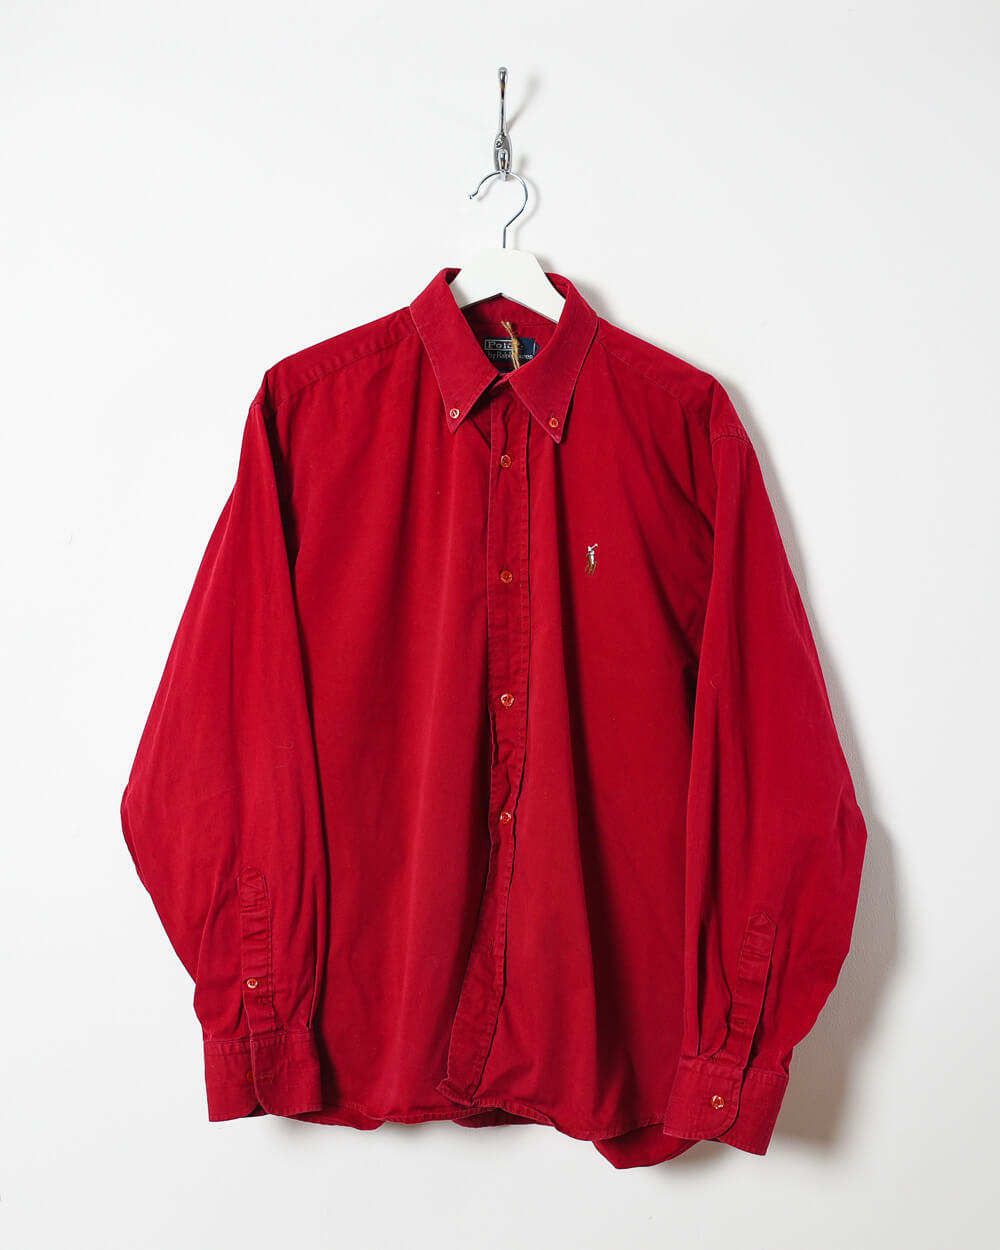 Red Ralph Lauren Shirt - Medium